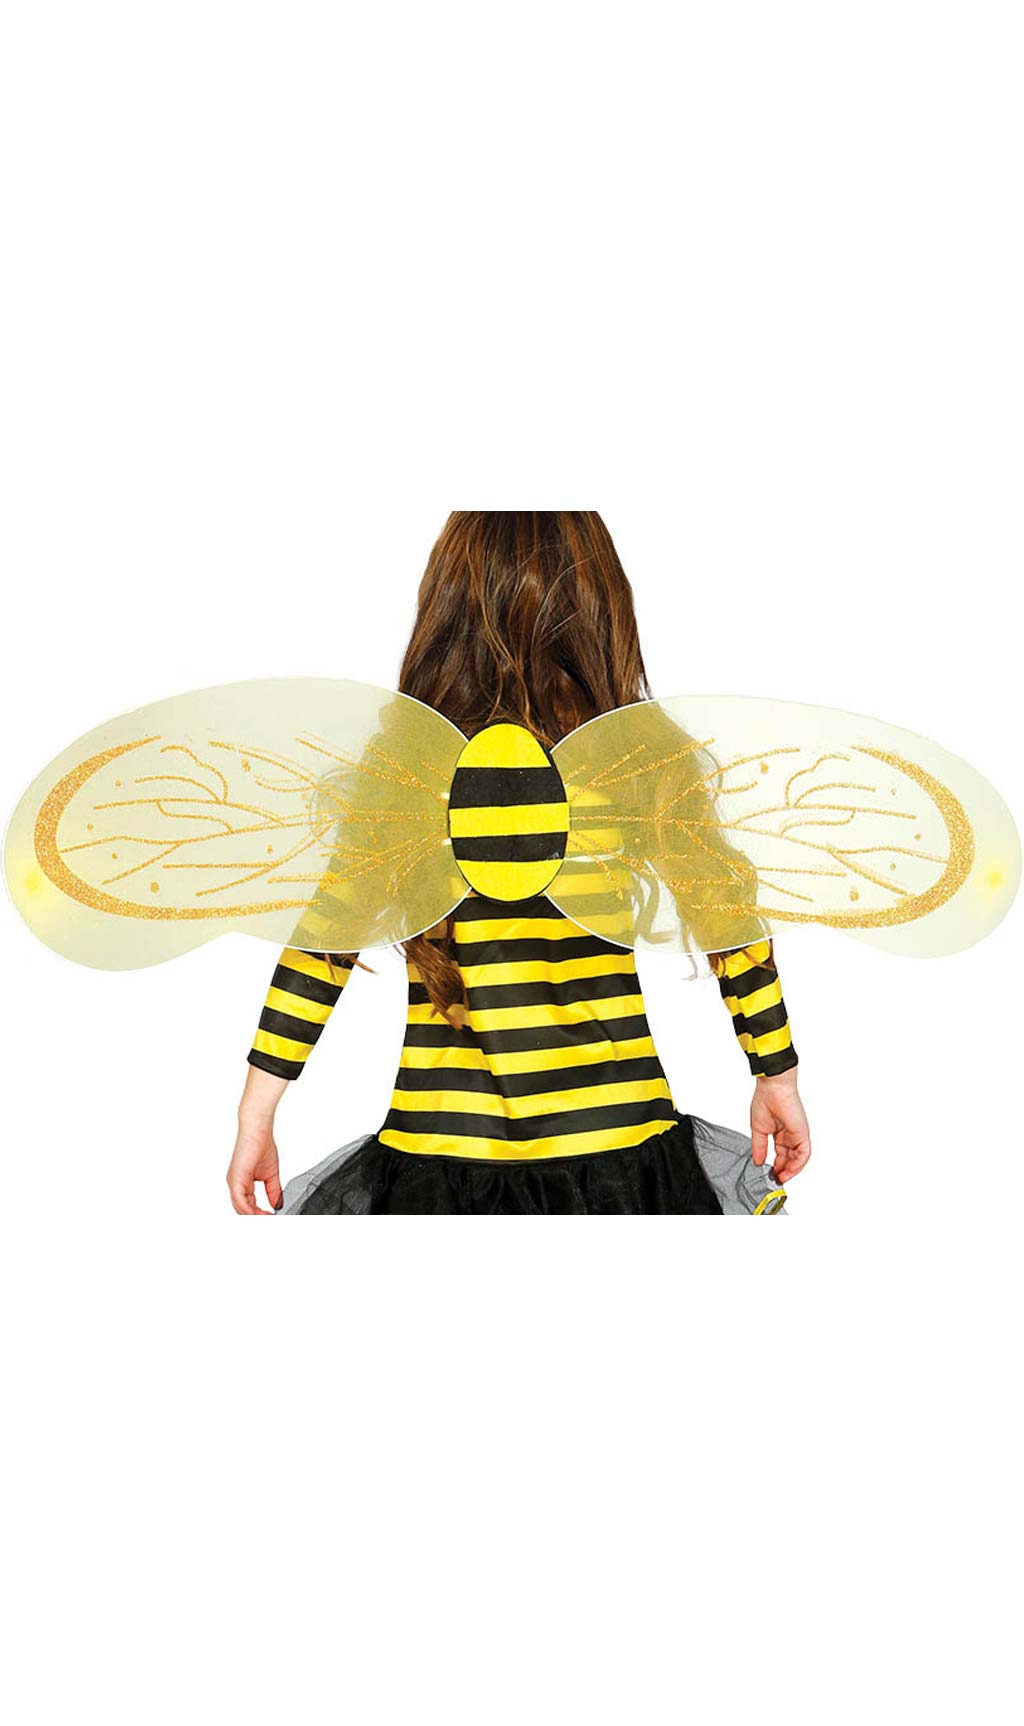 Bienchen Flügel für Kinder